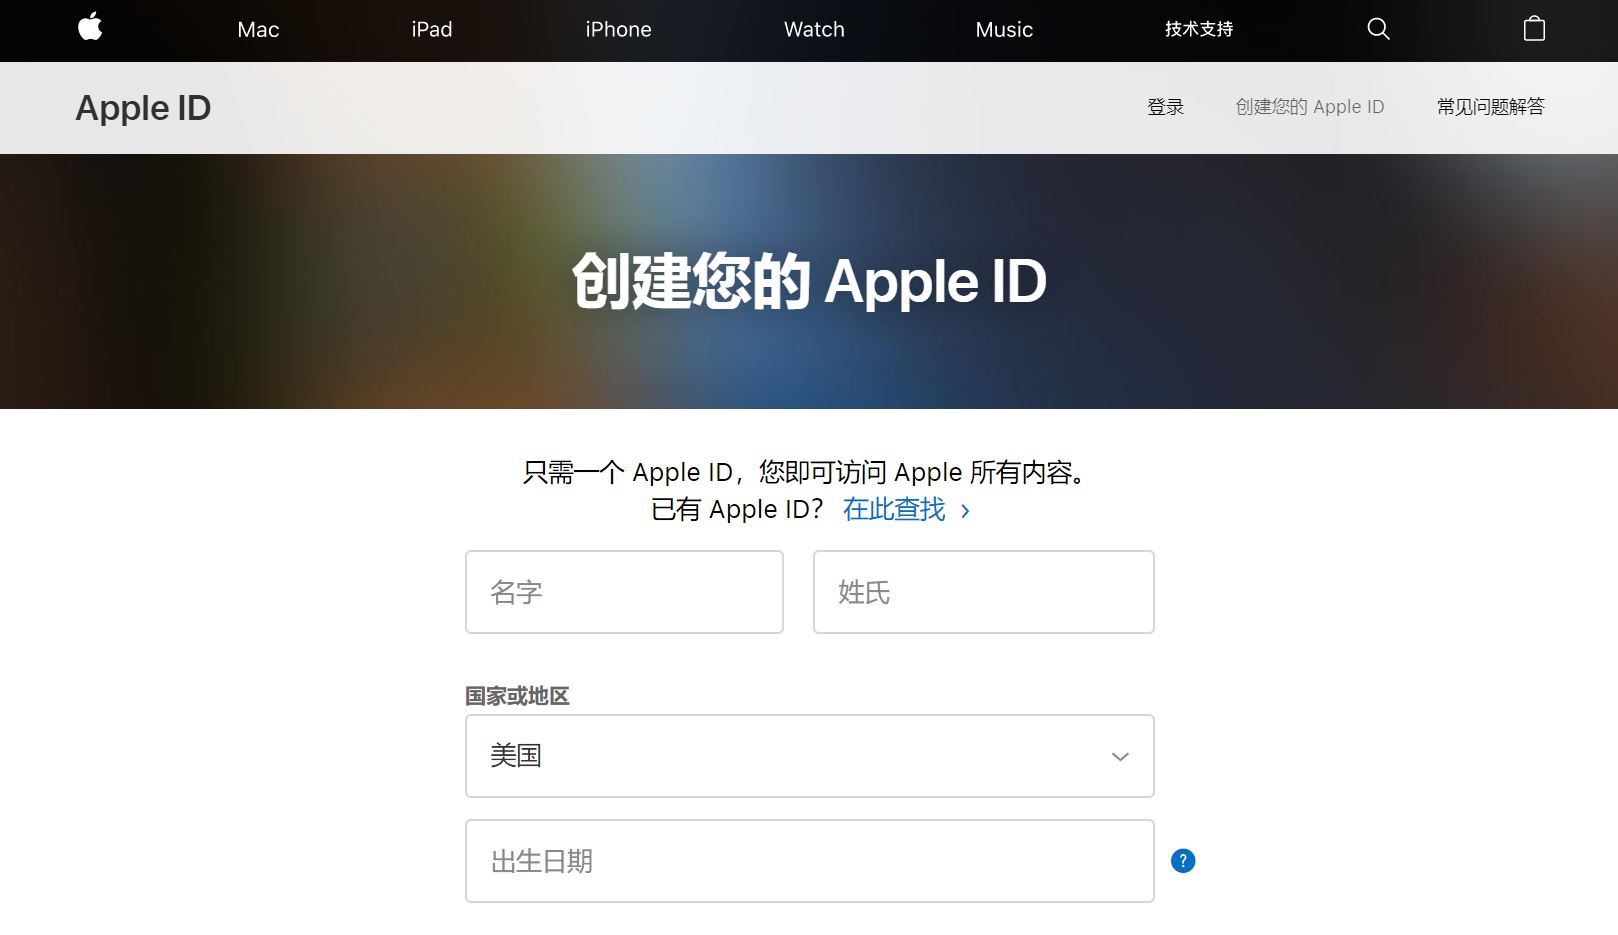 注册美区 Apple ID 帐号的终极指南